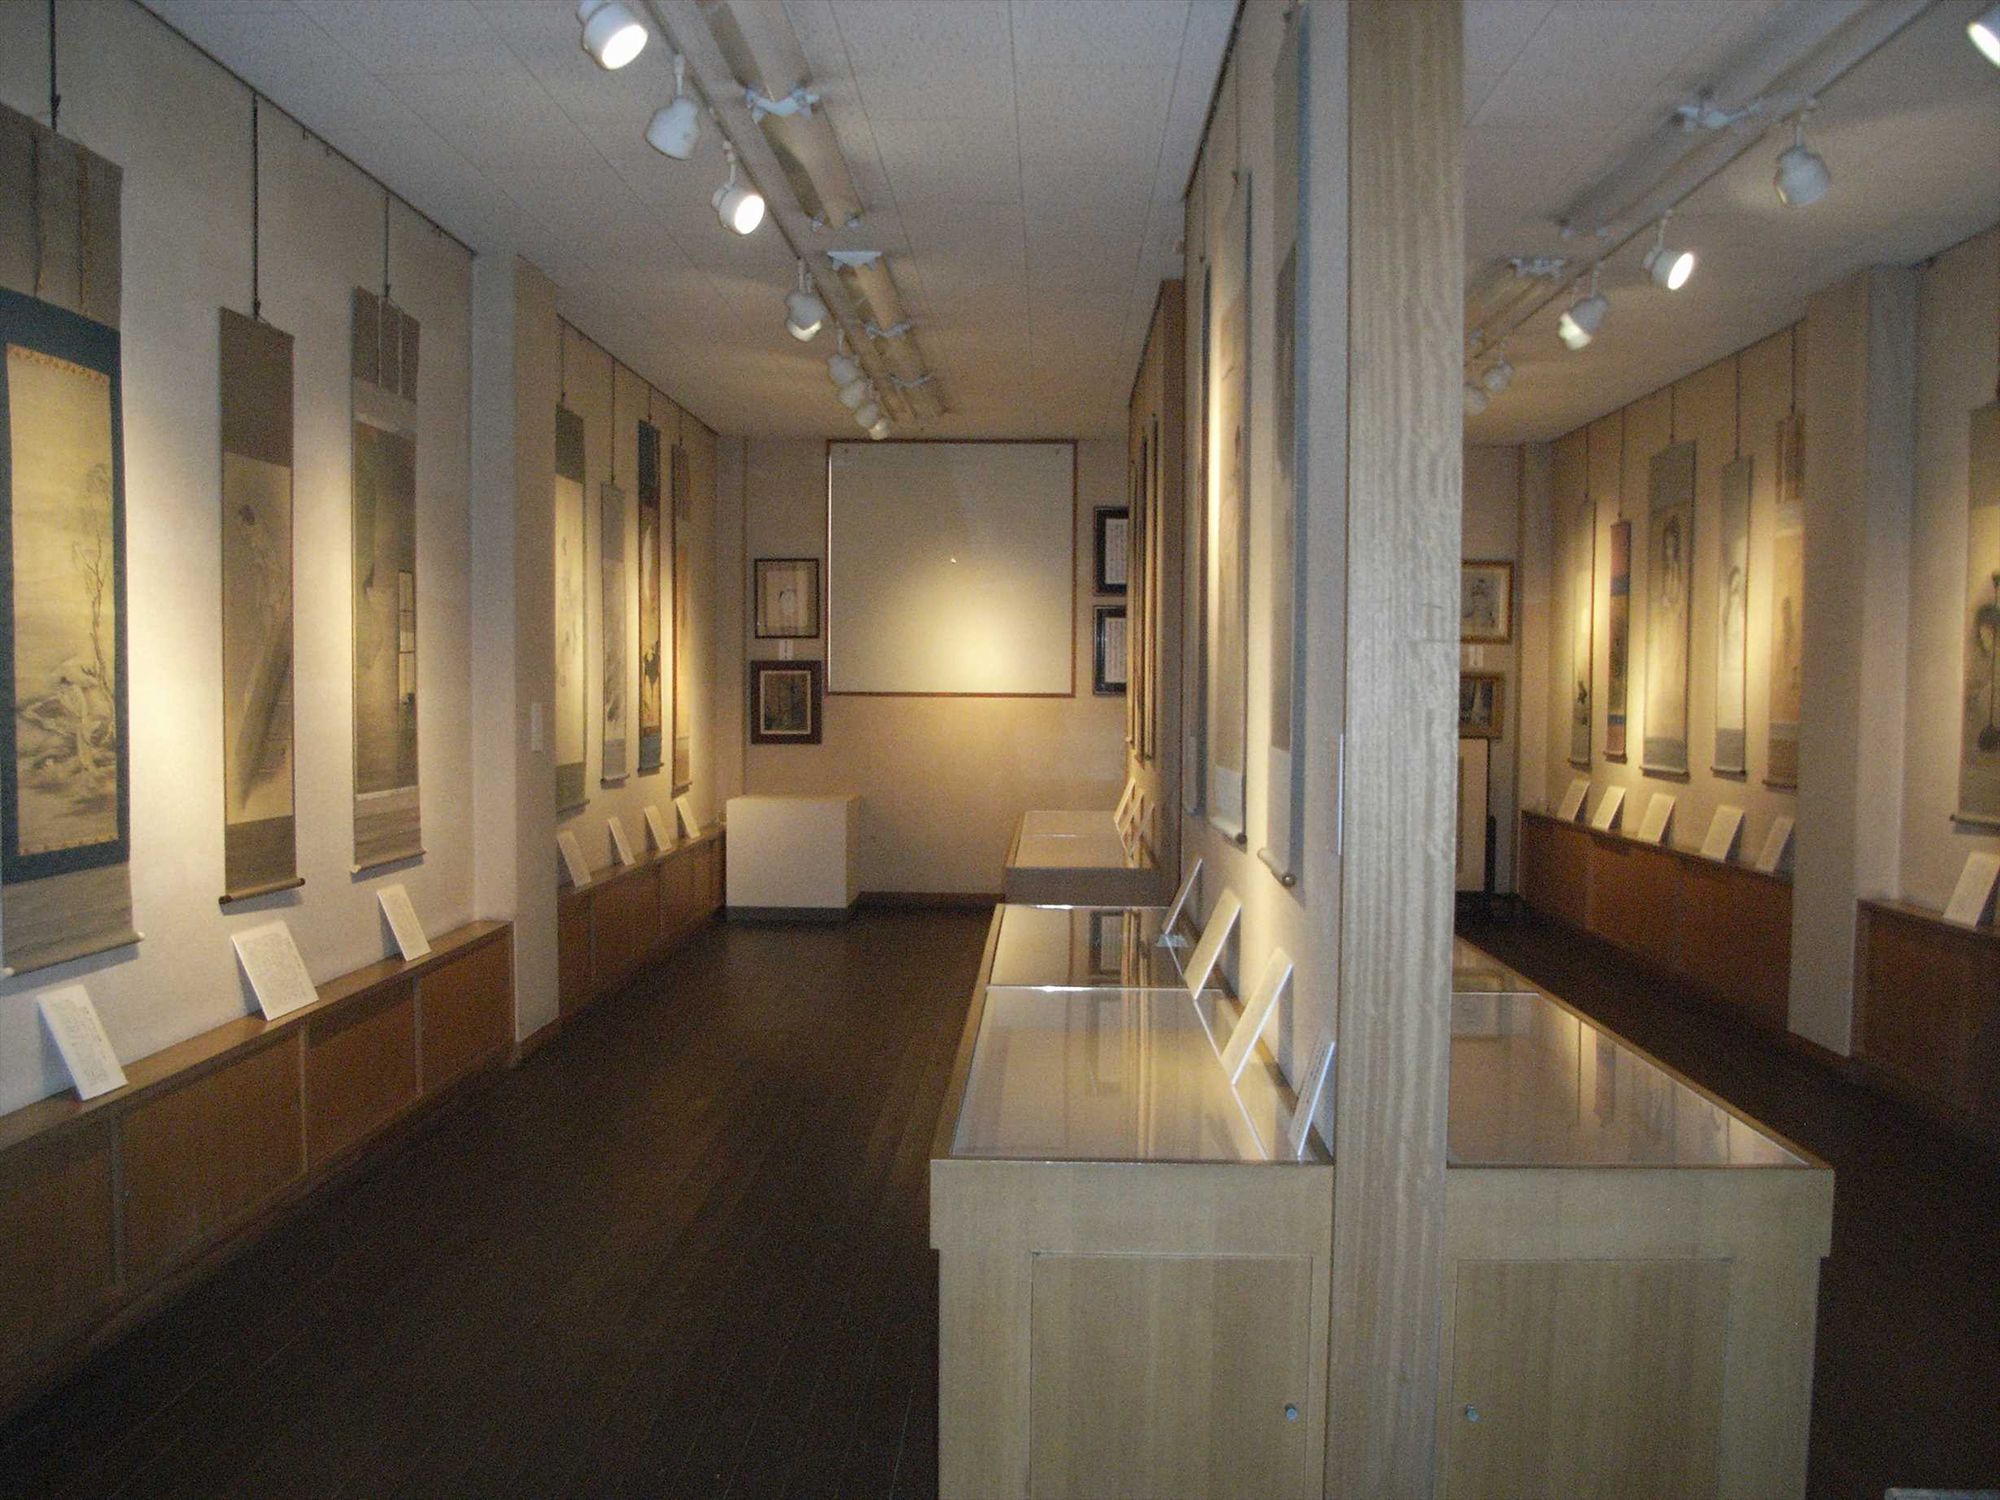 全生庵では三遊亭圓朝が収集した幽霊画、五十幅を所蔵。ふだんは非公開だが、今回の展示では約35幅を展示公開される。